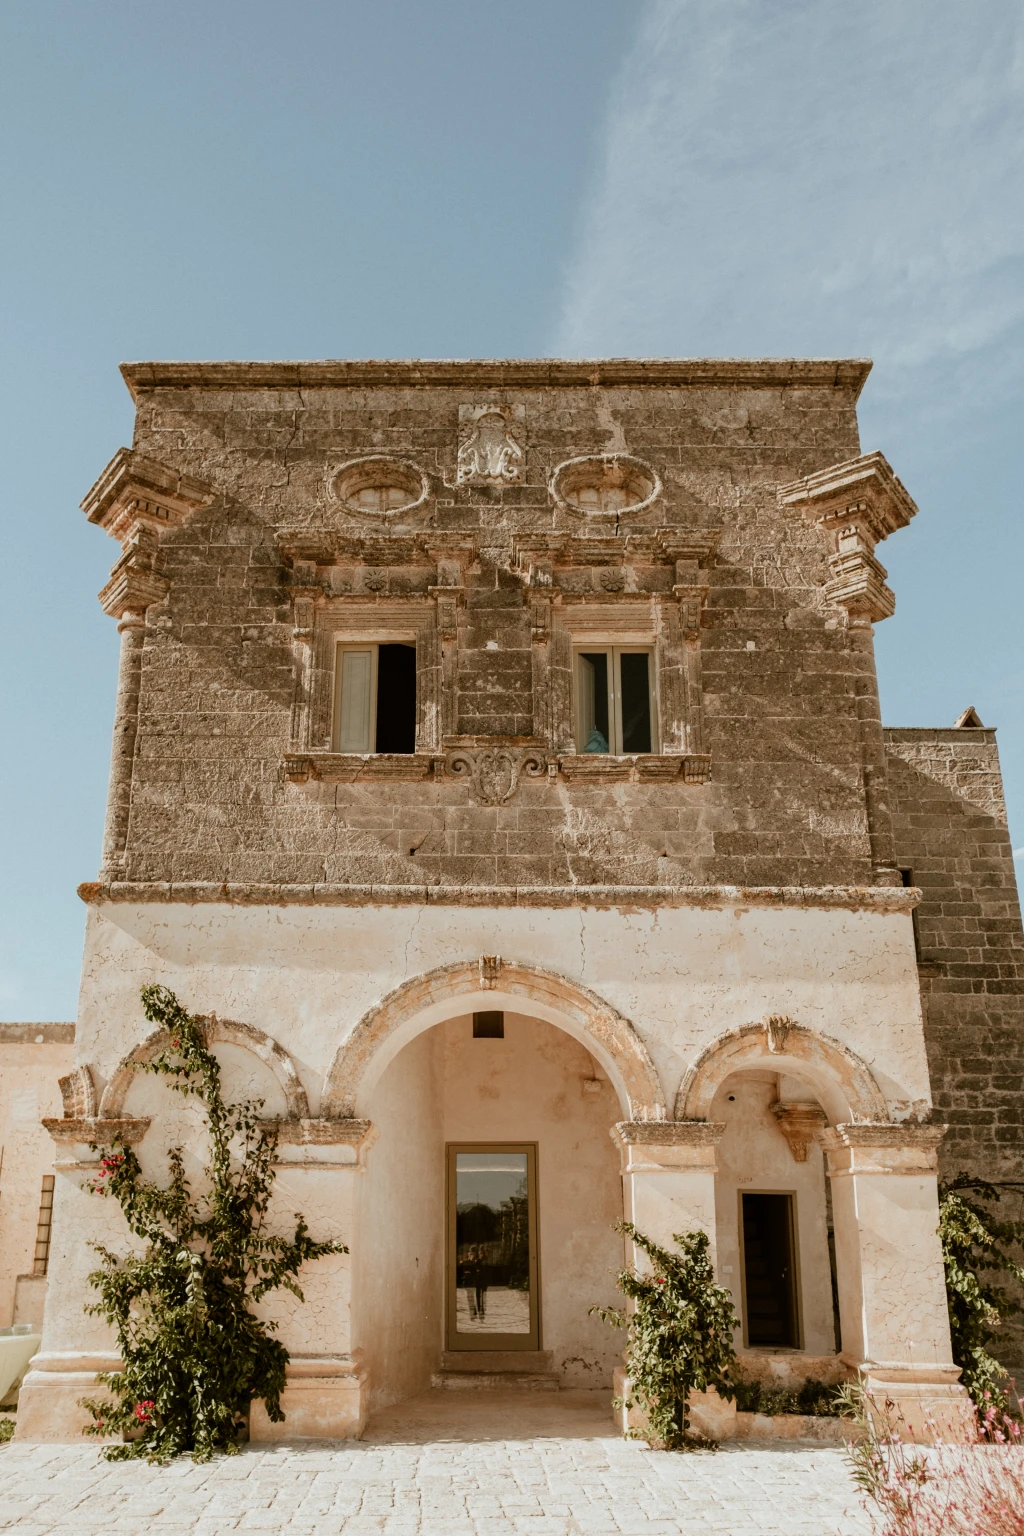 15th Century Old Villa in Puglia, Italy